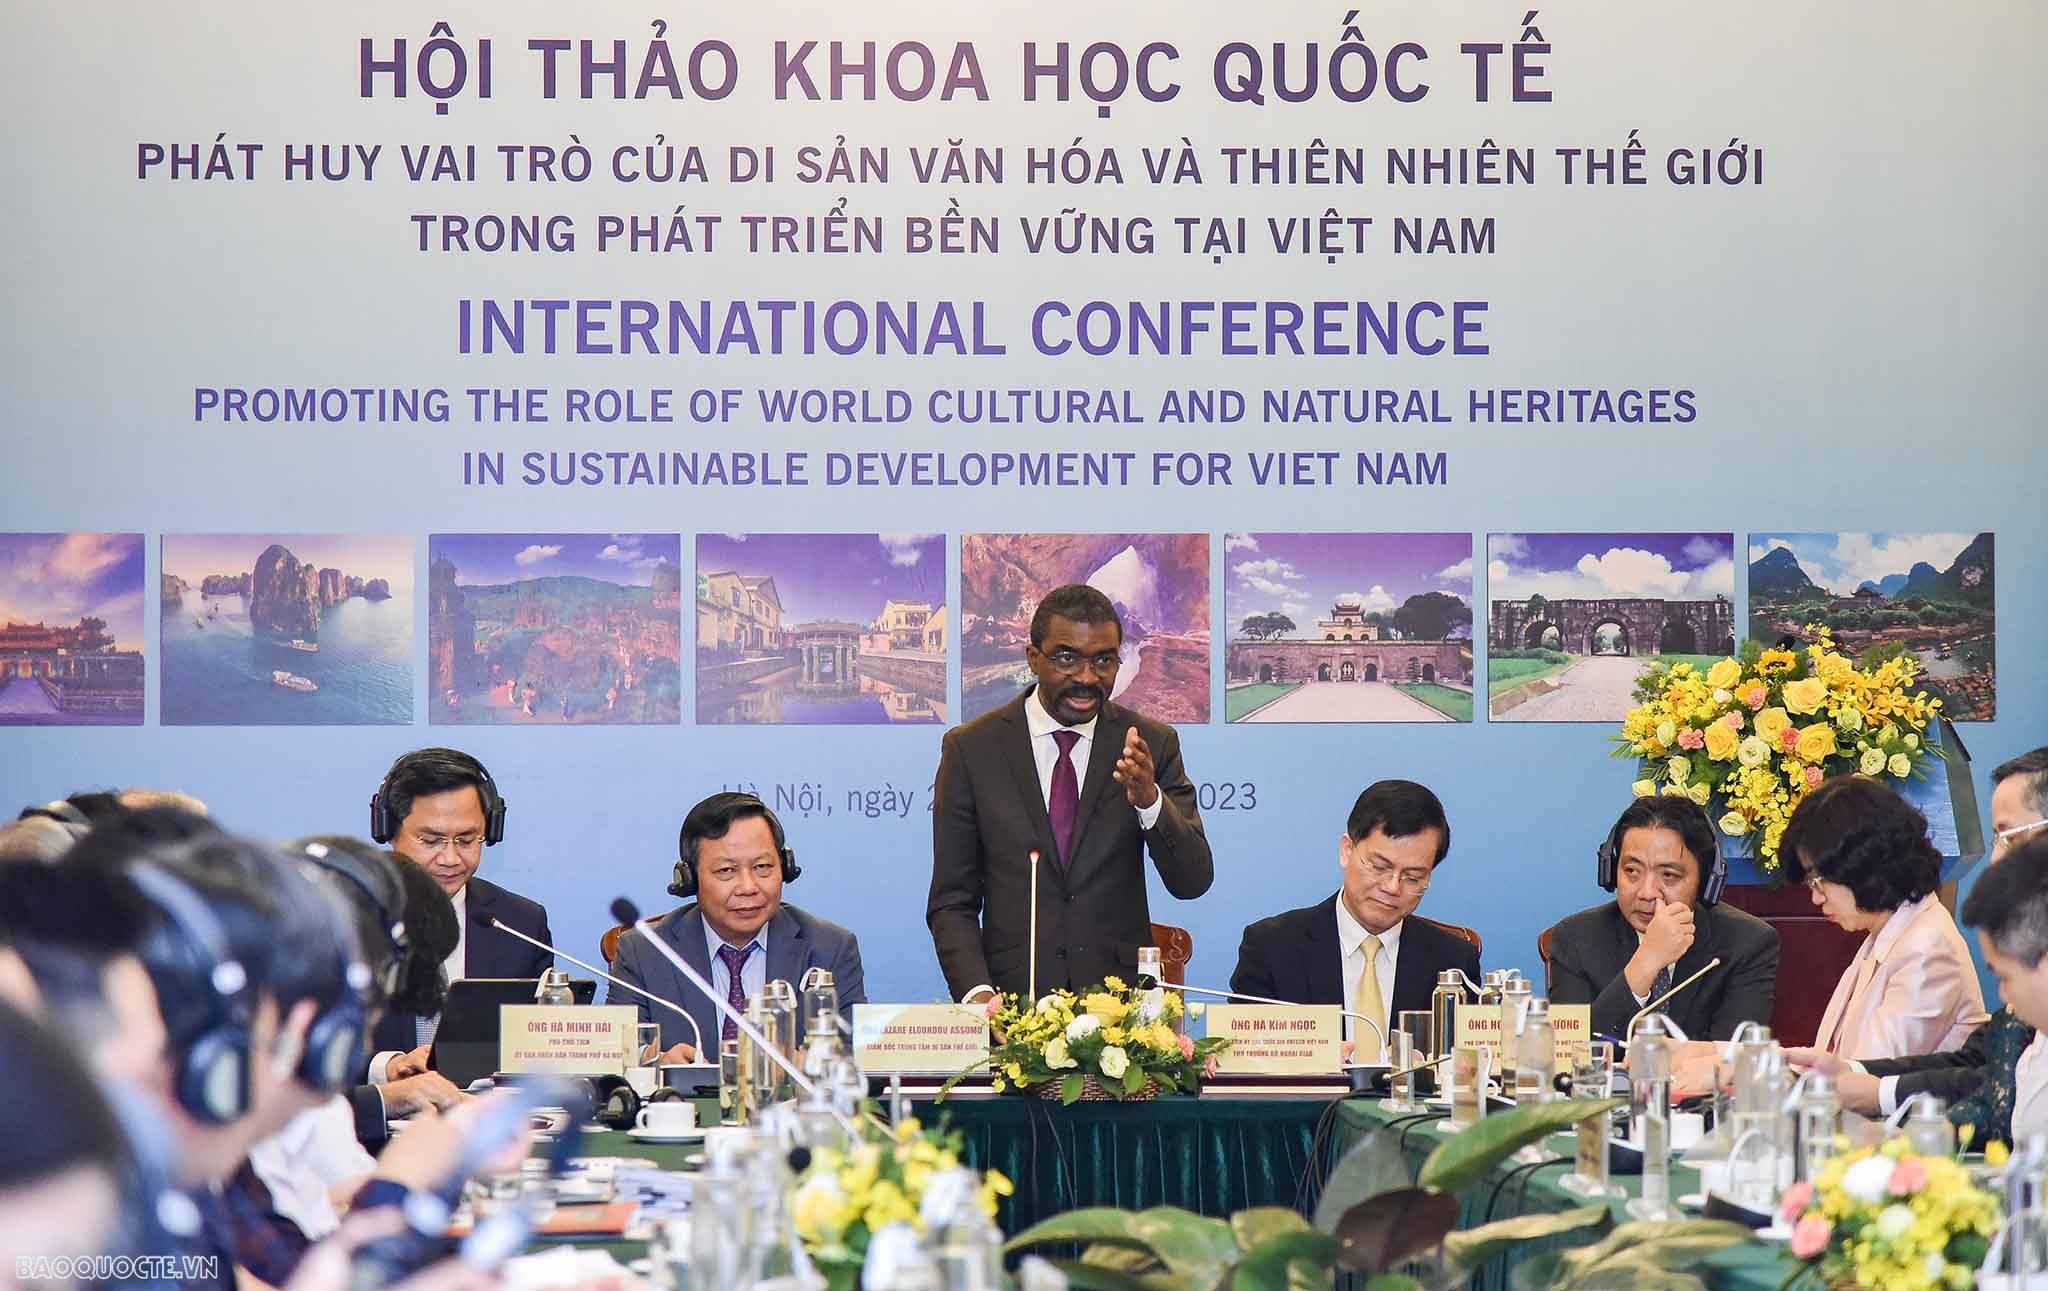 Phát huy vai trò của di sản văn hóa và thiên nhiên thế giới trong phát triển bền vững tại Việt Nam